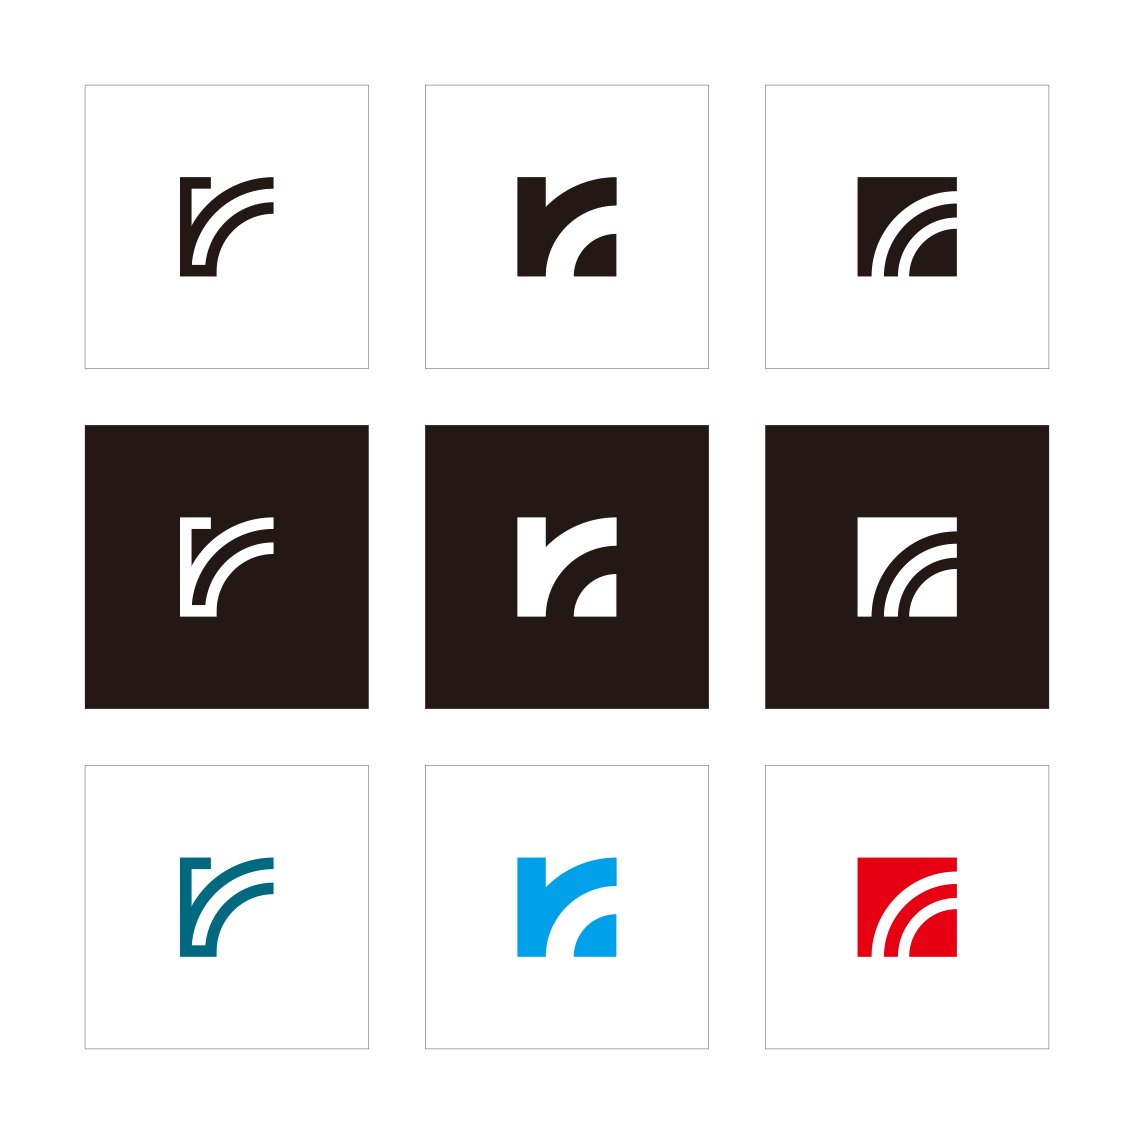 ロゴデザイン ロゴだく En Twitter ロゴを白と黒でシミュレーション 背景が黒 ロゴが白の方は膨張して見えます サイトアップ準備中 色を決めるのは最後になります 白黒のロゴは重要です Rロゴ ロゴが出来るまで 白黒ロゴ ロゴだく Logodaku